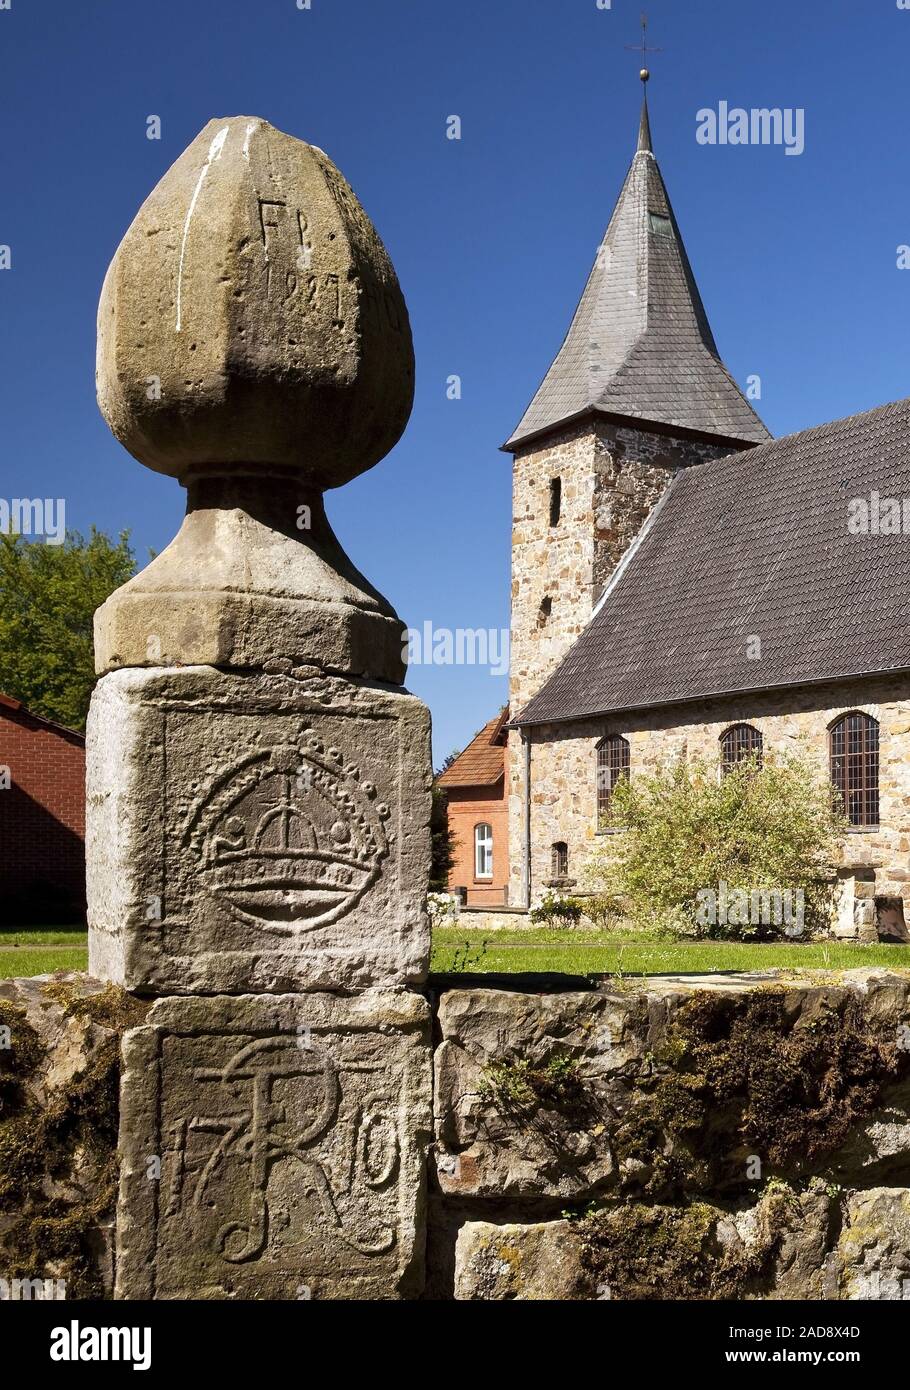 Evangelische Kirche Schuesselburg, Petershagen, Nordrhein-Westfalen, Deutschland, Europa Stockfoto